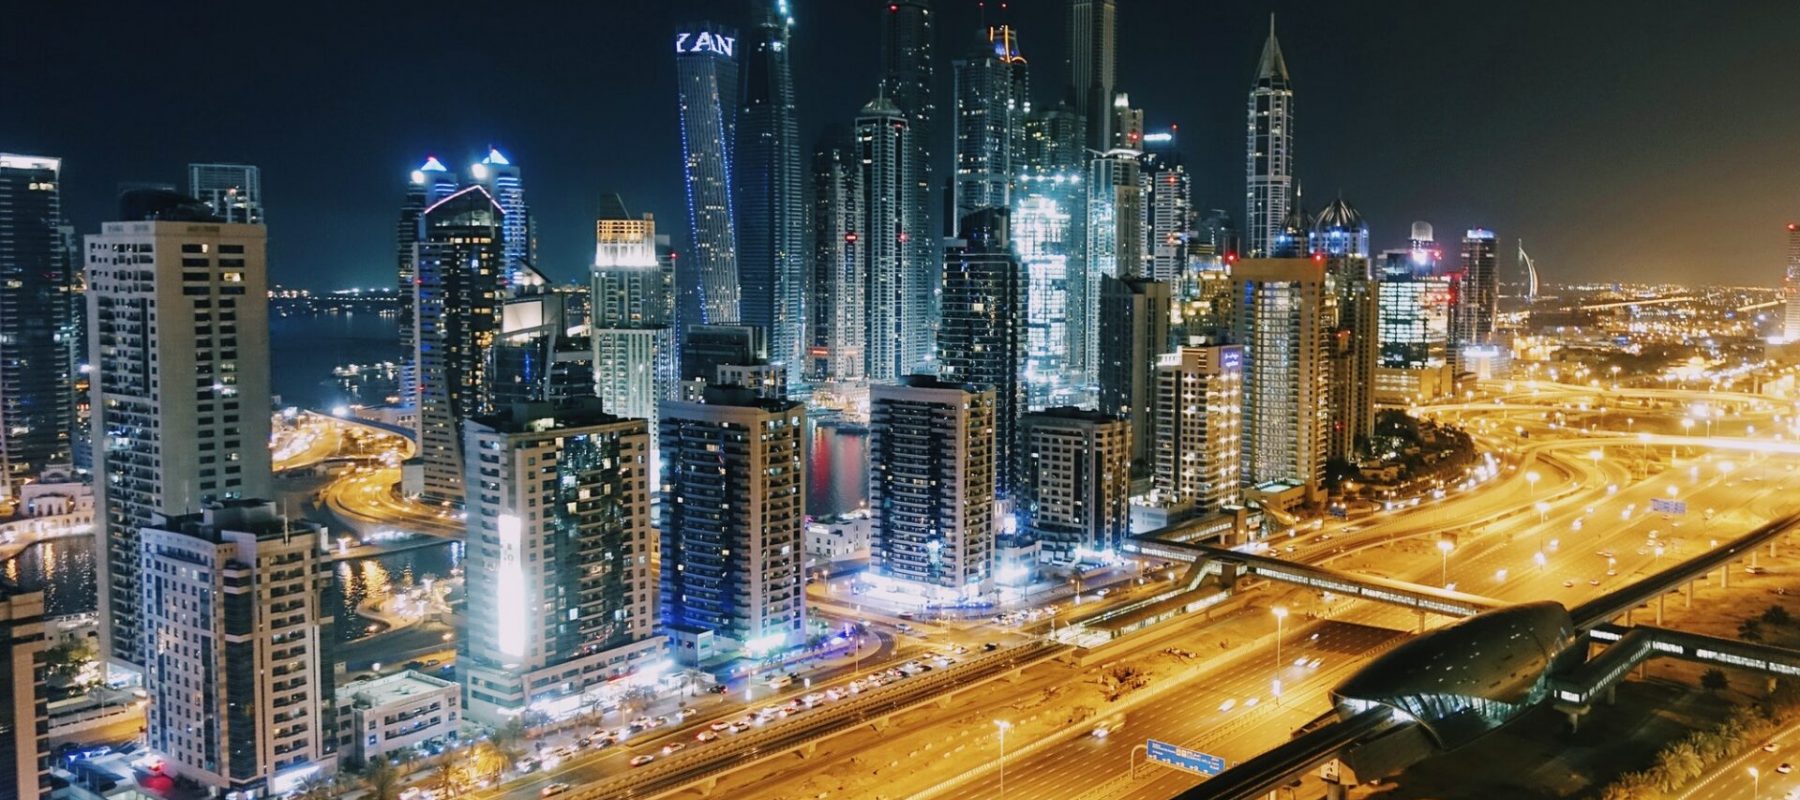 City at night - Dubai Marina